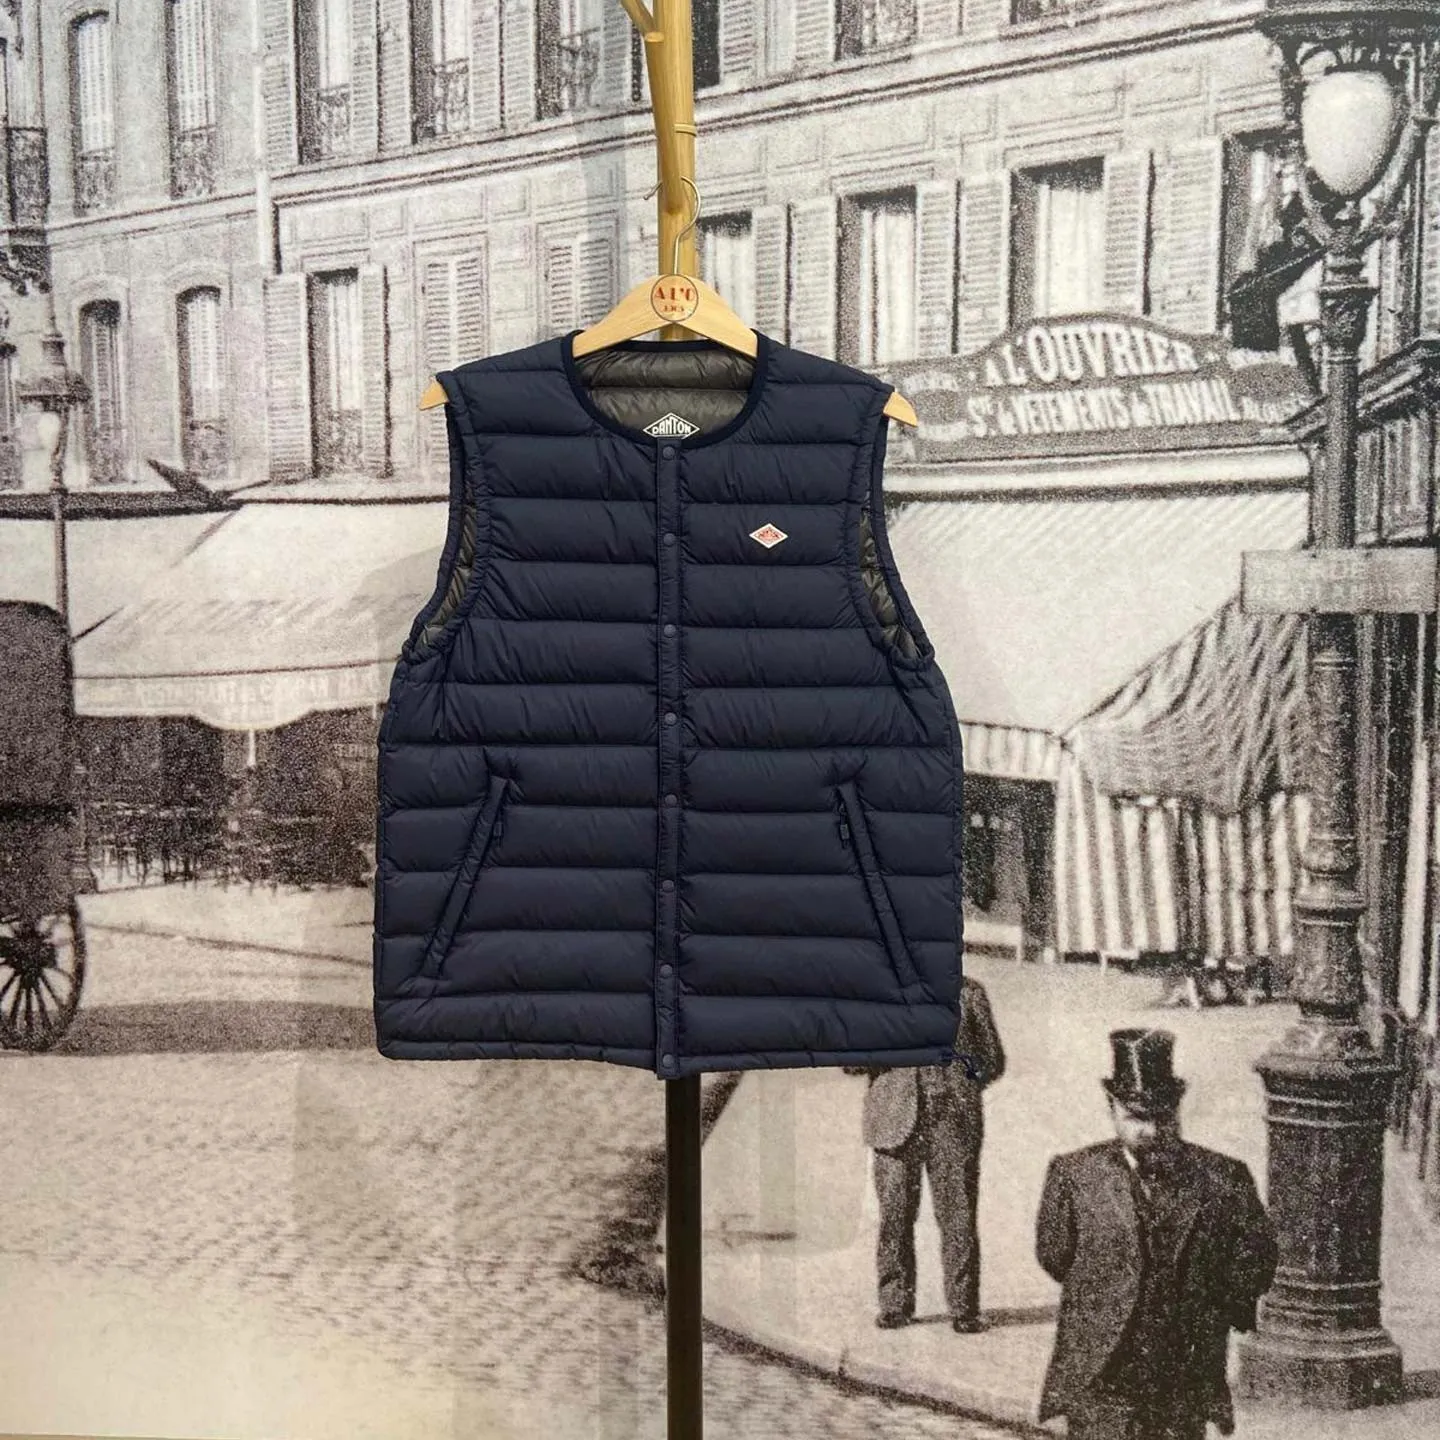 Jackets & Coats / A L'O - 1905 - Paris - Workwear Concept store